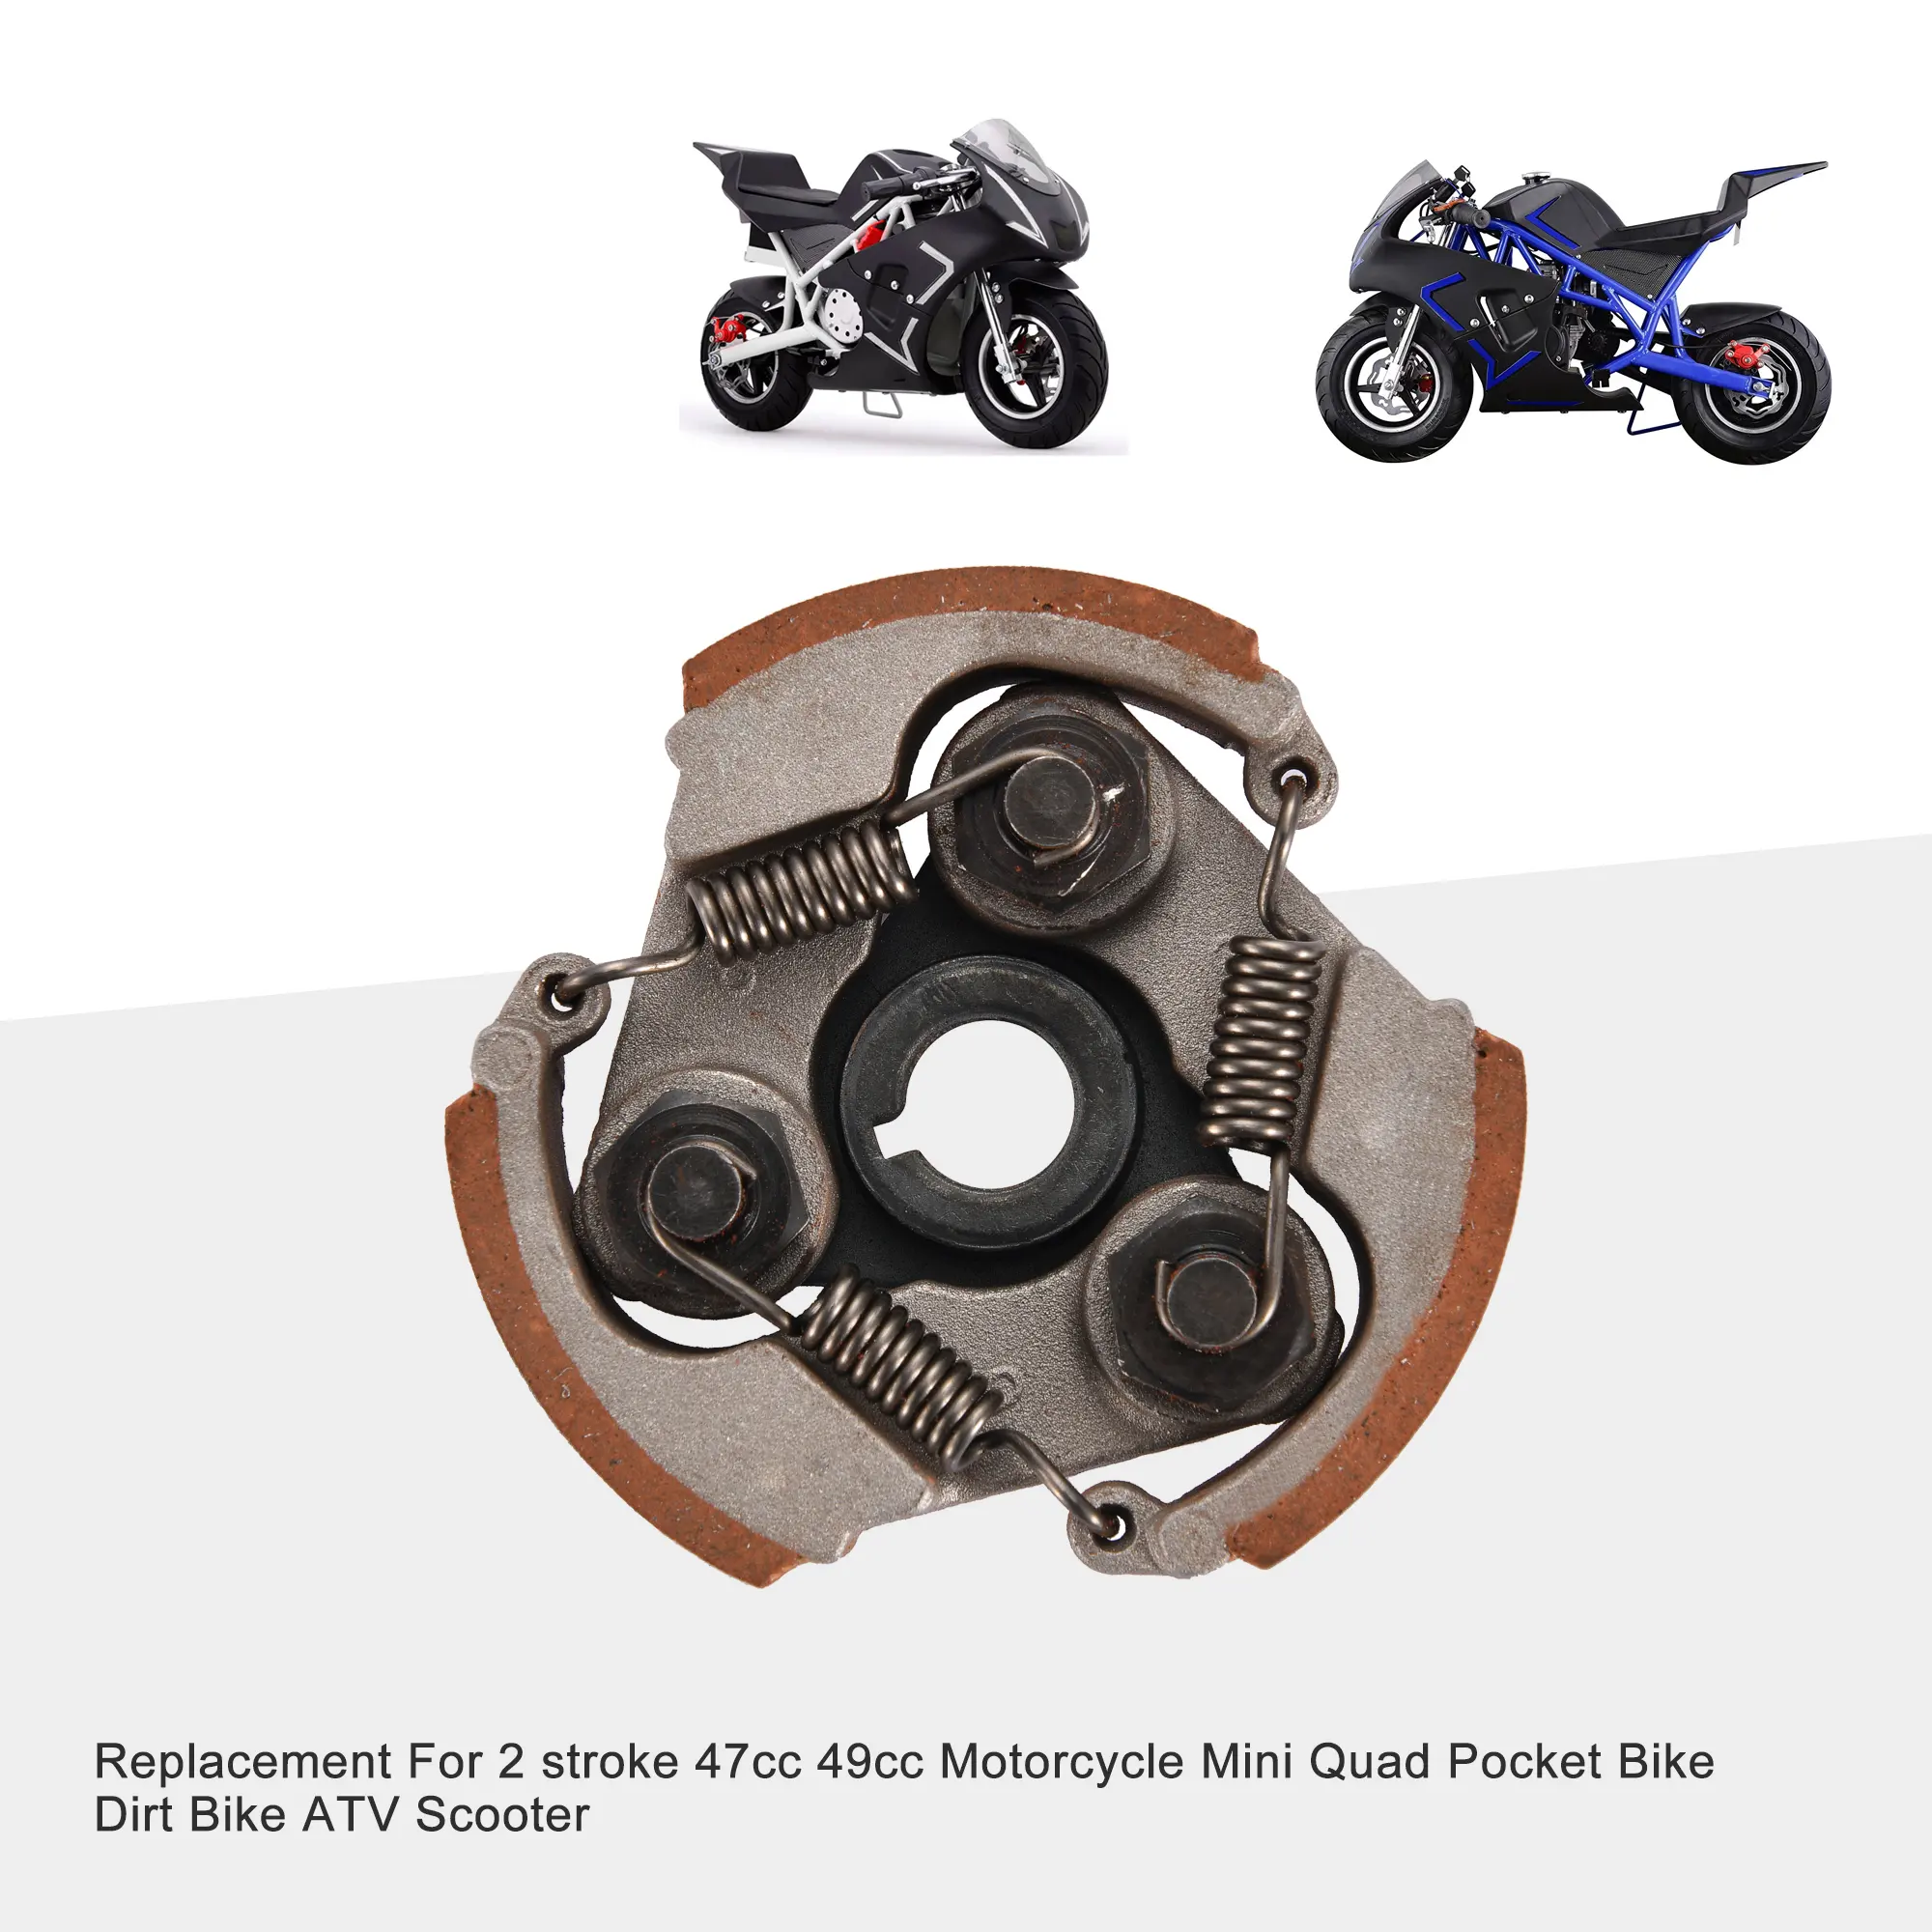 GOOFIT-almohadilla de embrague de alta resistencia para motocicleta, con muelles para motocicleta de 2 tiempos, 47CC, 49CC, Mini Quad Pocket, Dirt Bike ATV Scoot